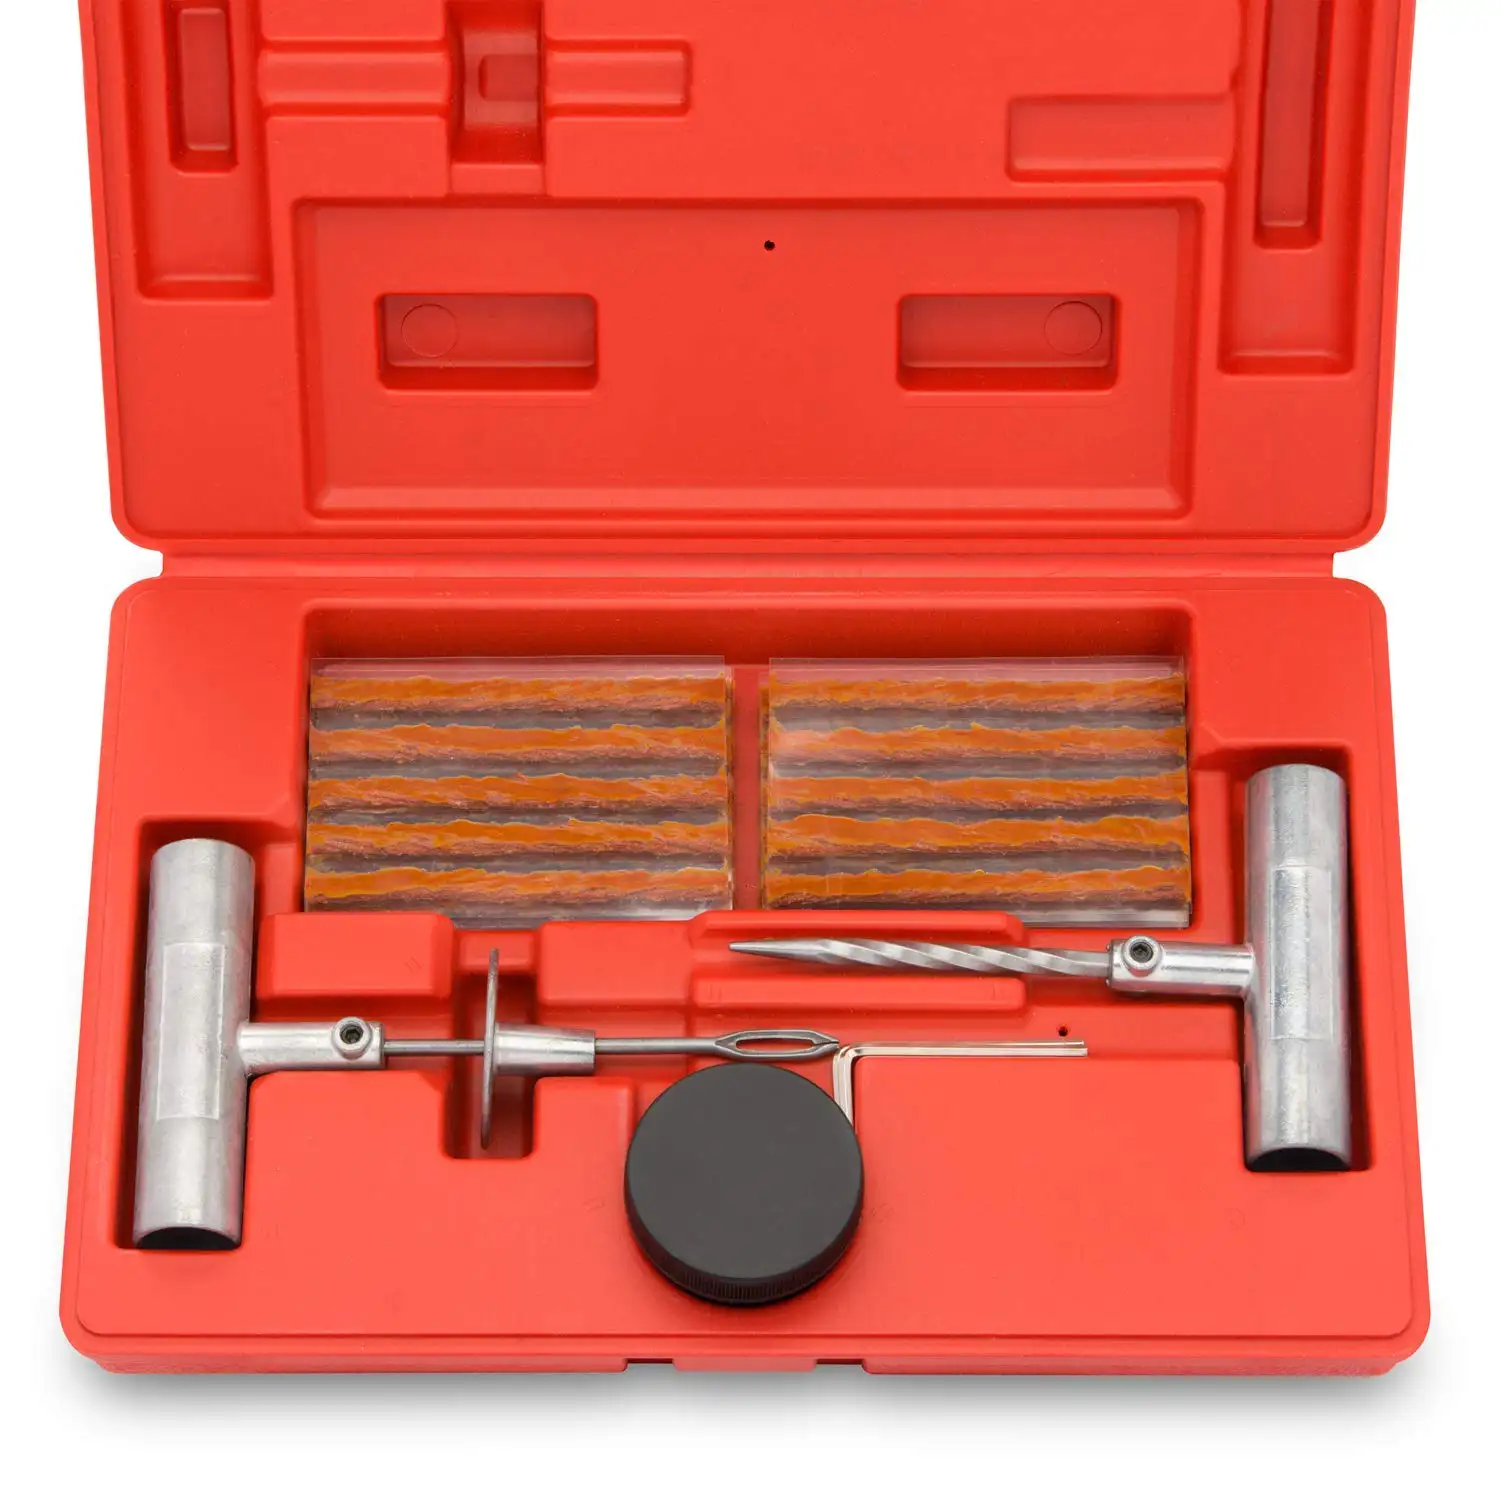 Heavy duty pneu reparação ferramenta kit com pneu reparação plug segura ferramentas manuais